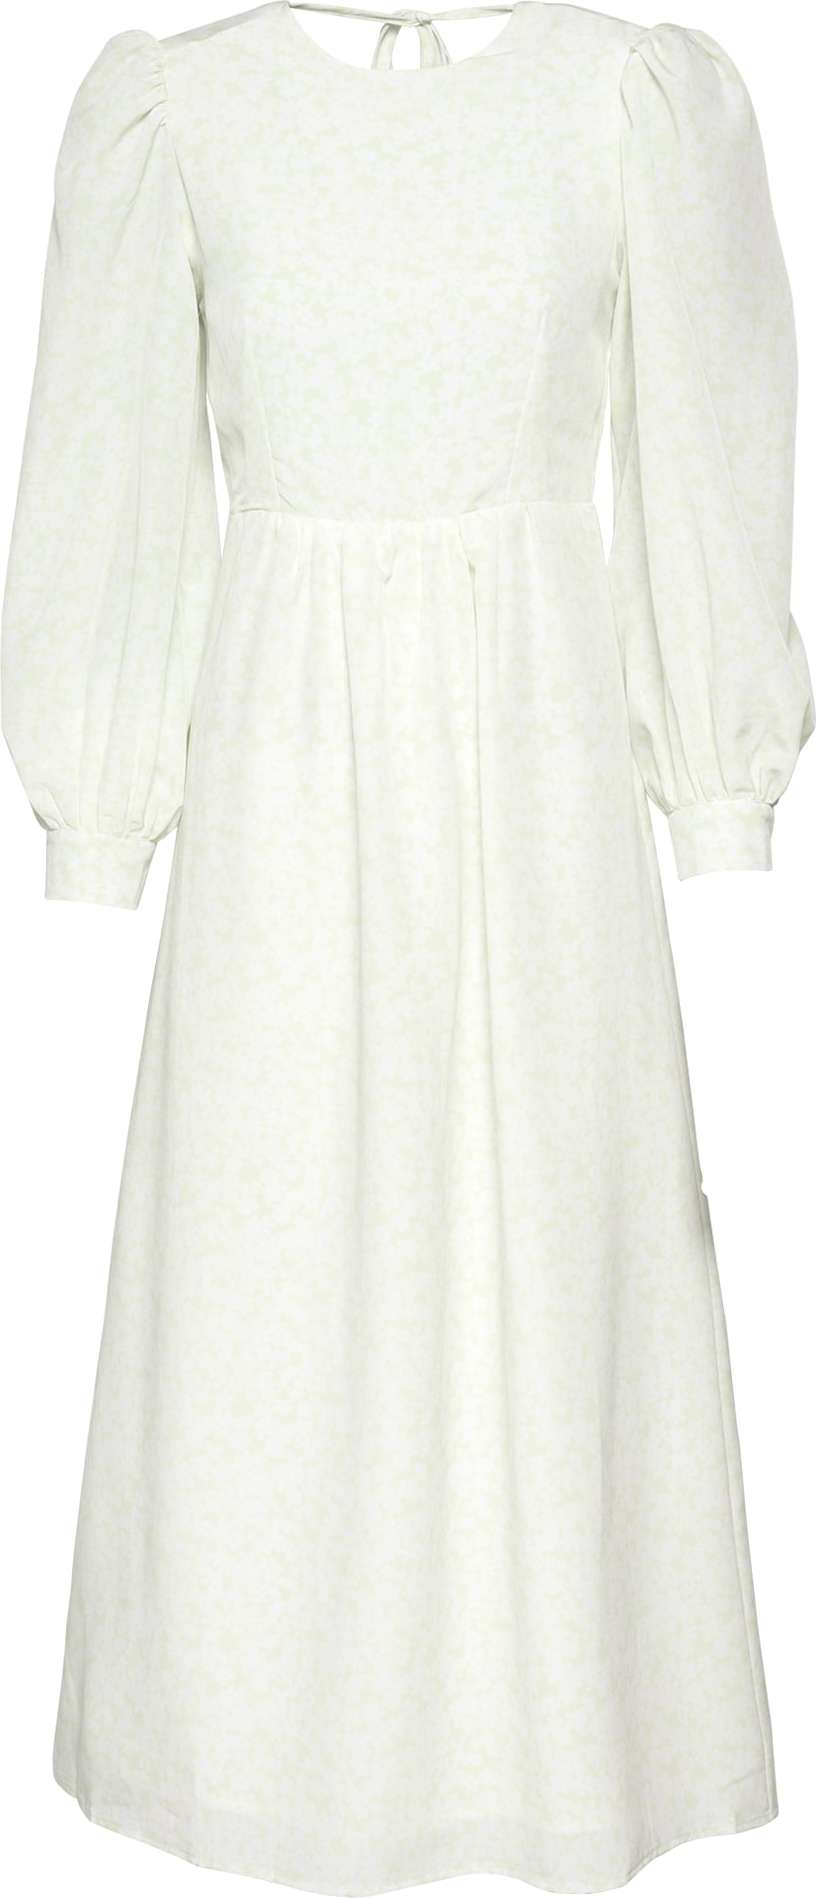 Fashion Union Šaty 'GWEN' bílá / mátová